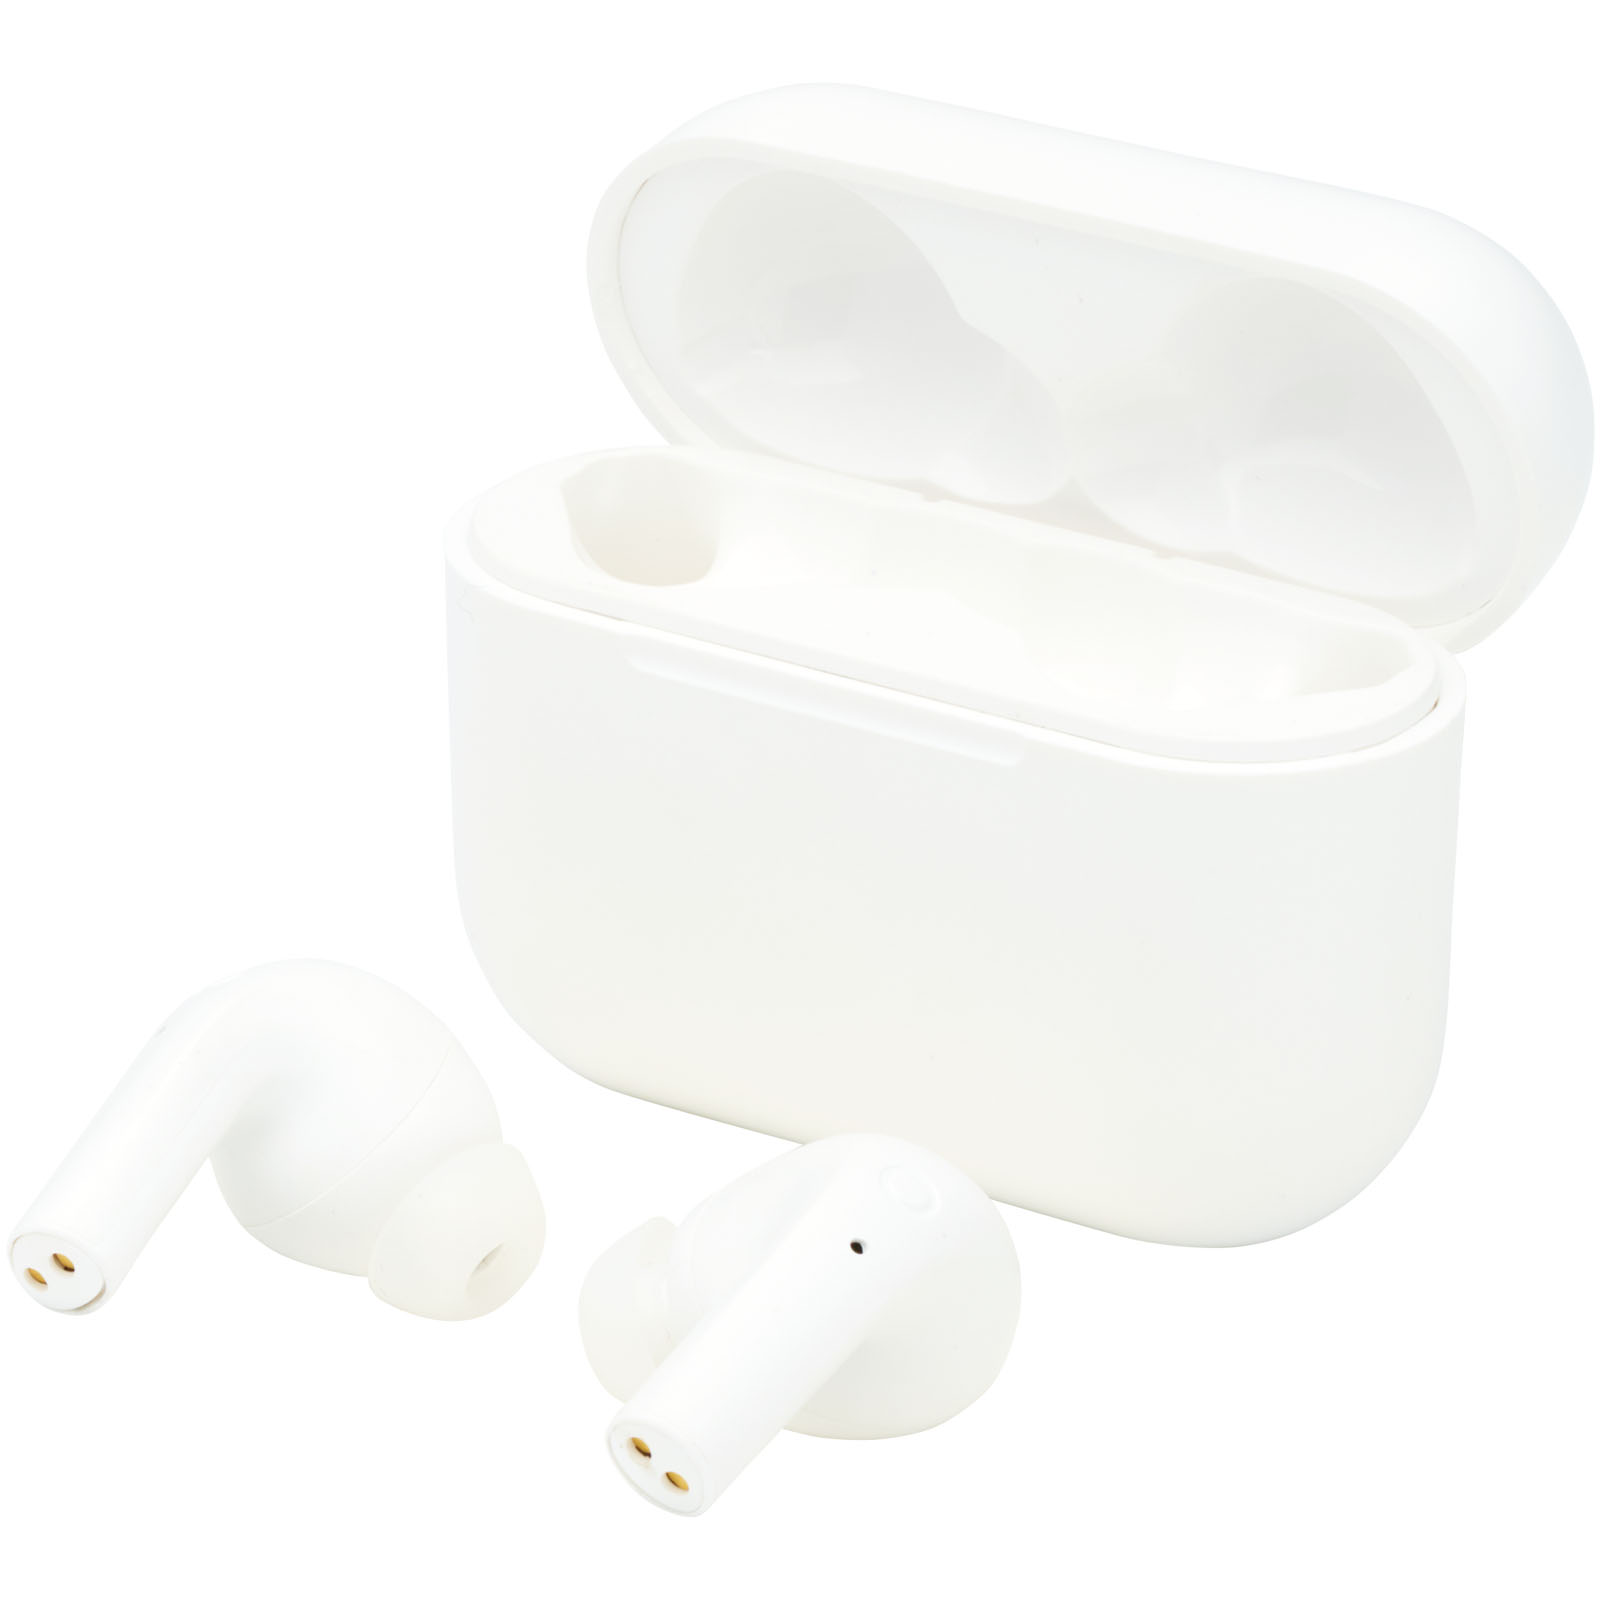 Earbuds - Braavos 2 True Wireless auto pair earbuds